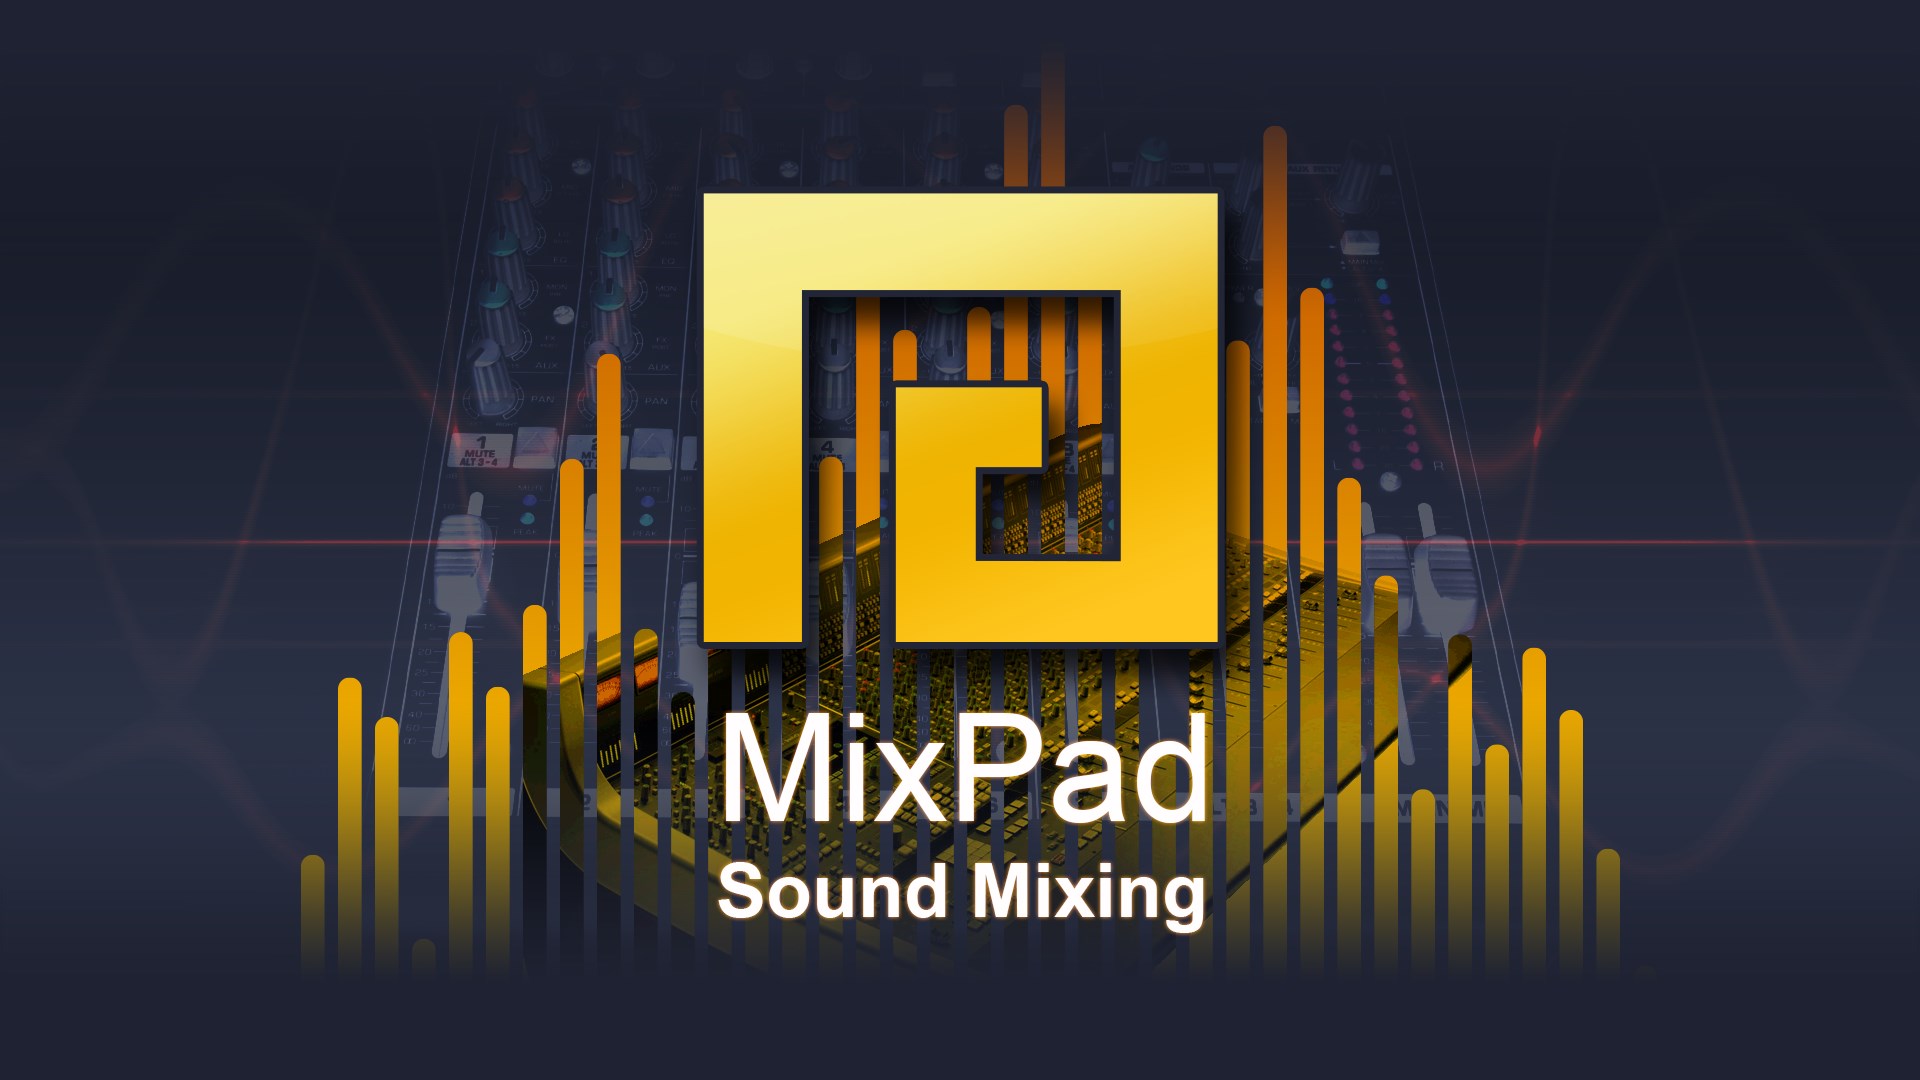 NCH: MixPad Multitrack Recording Key 20.89 USD